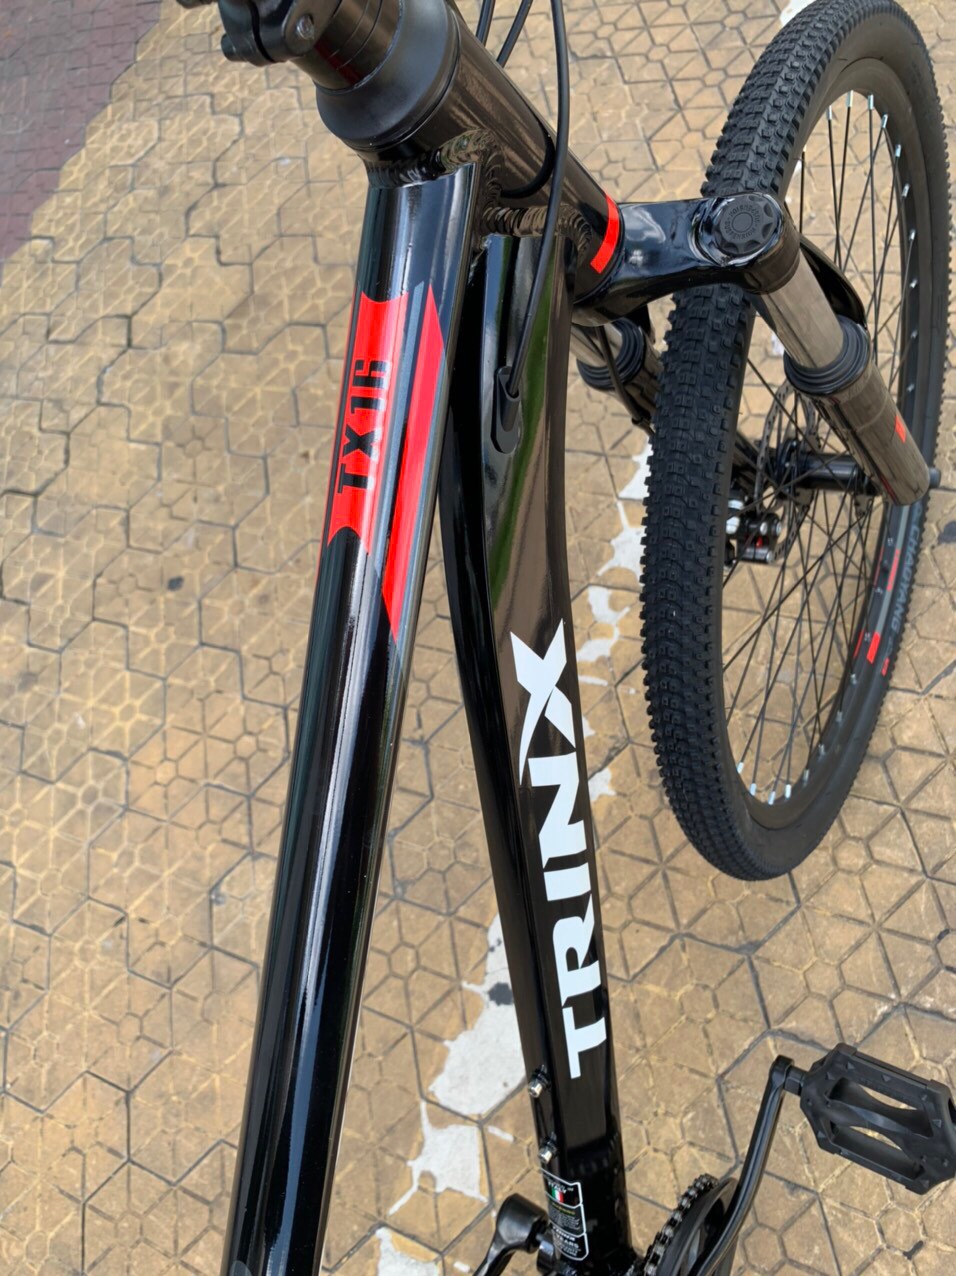 Xe đạp địa hình TrinX TX16 27.5 2020 Đen Đỏ